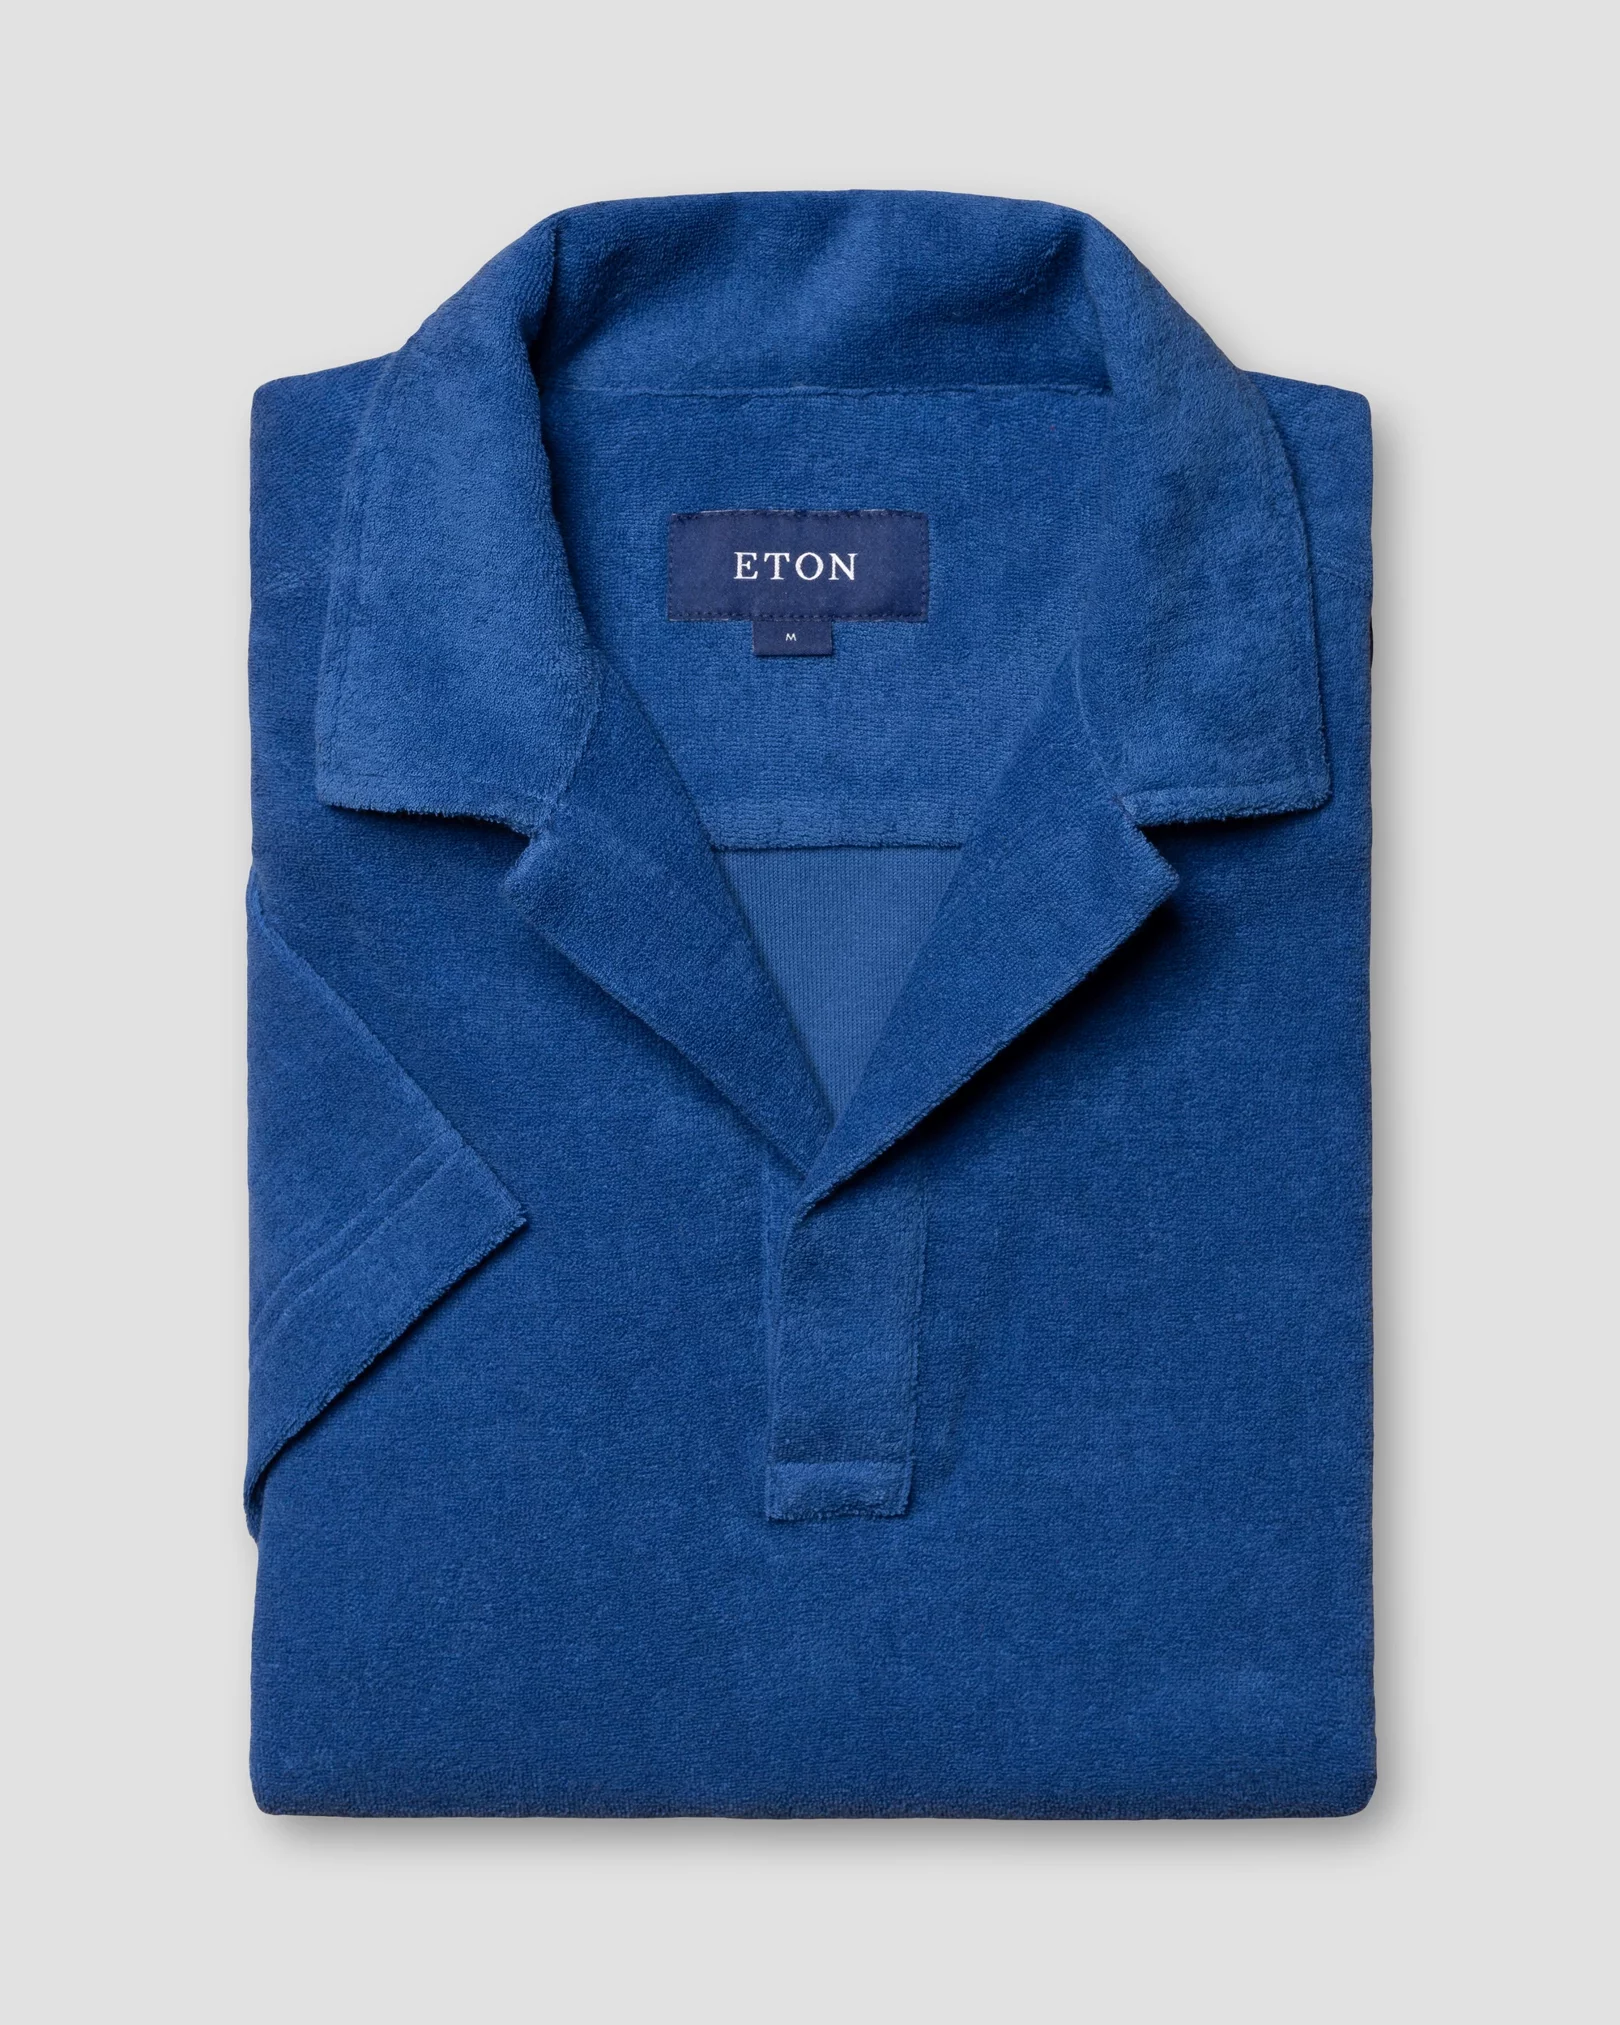 Eton - blue popover terry shirt